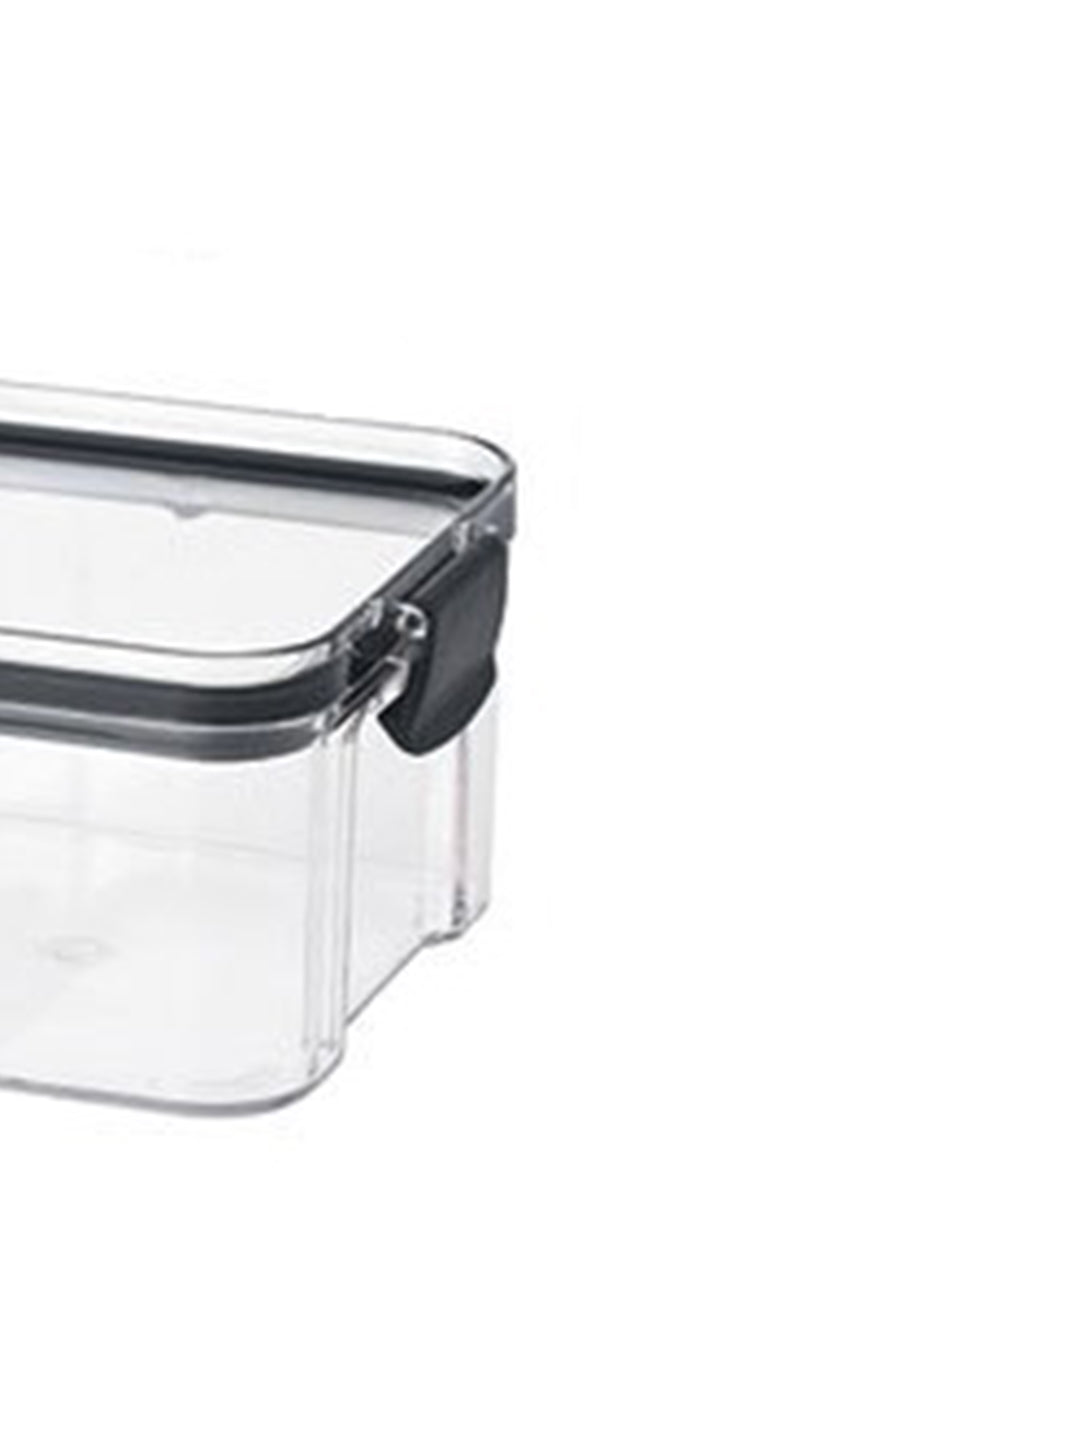 VON CASA Airtight Kitchen Storage Box - Transparent, 10 X 10 X 6.5cm